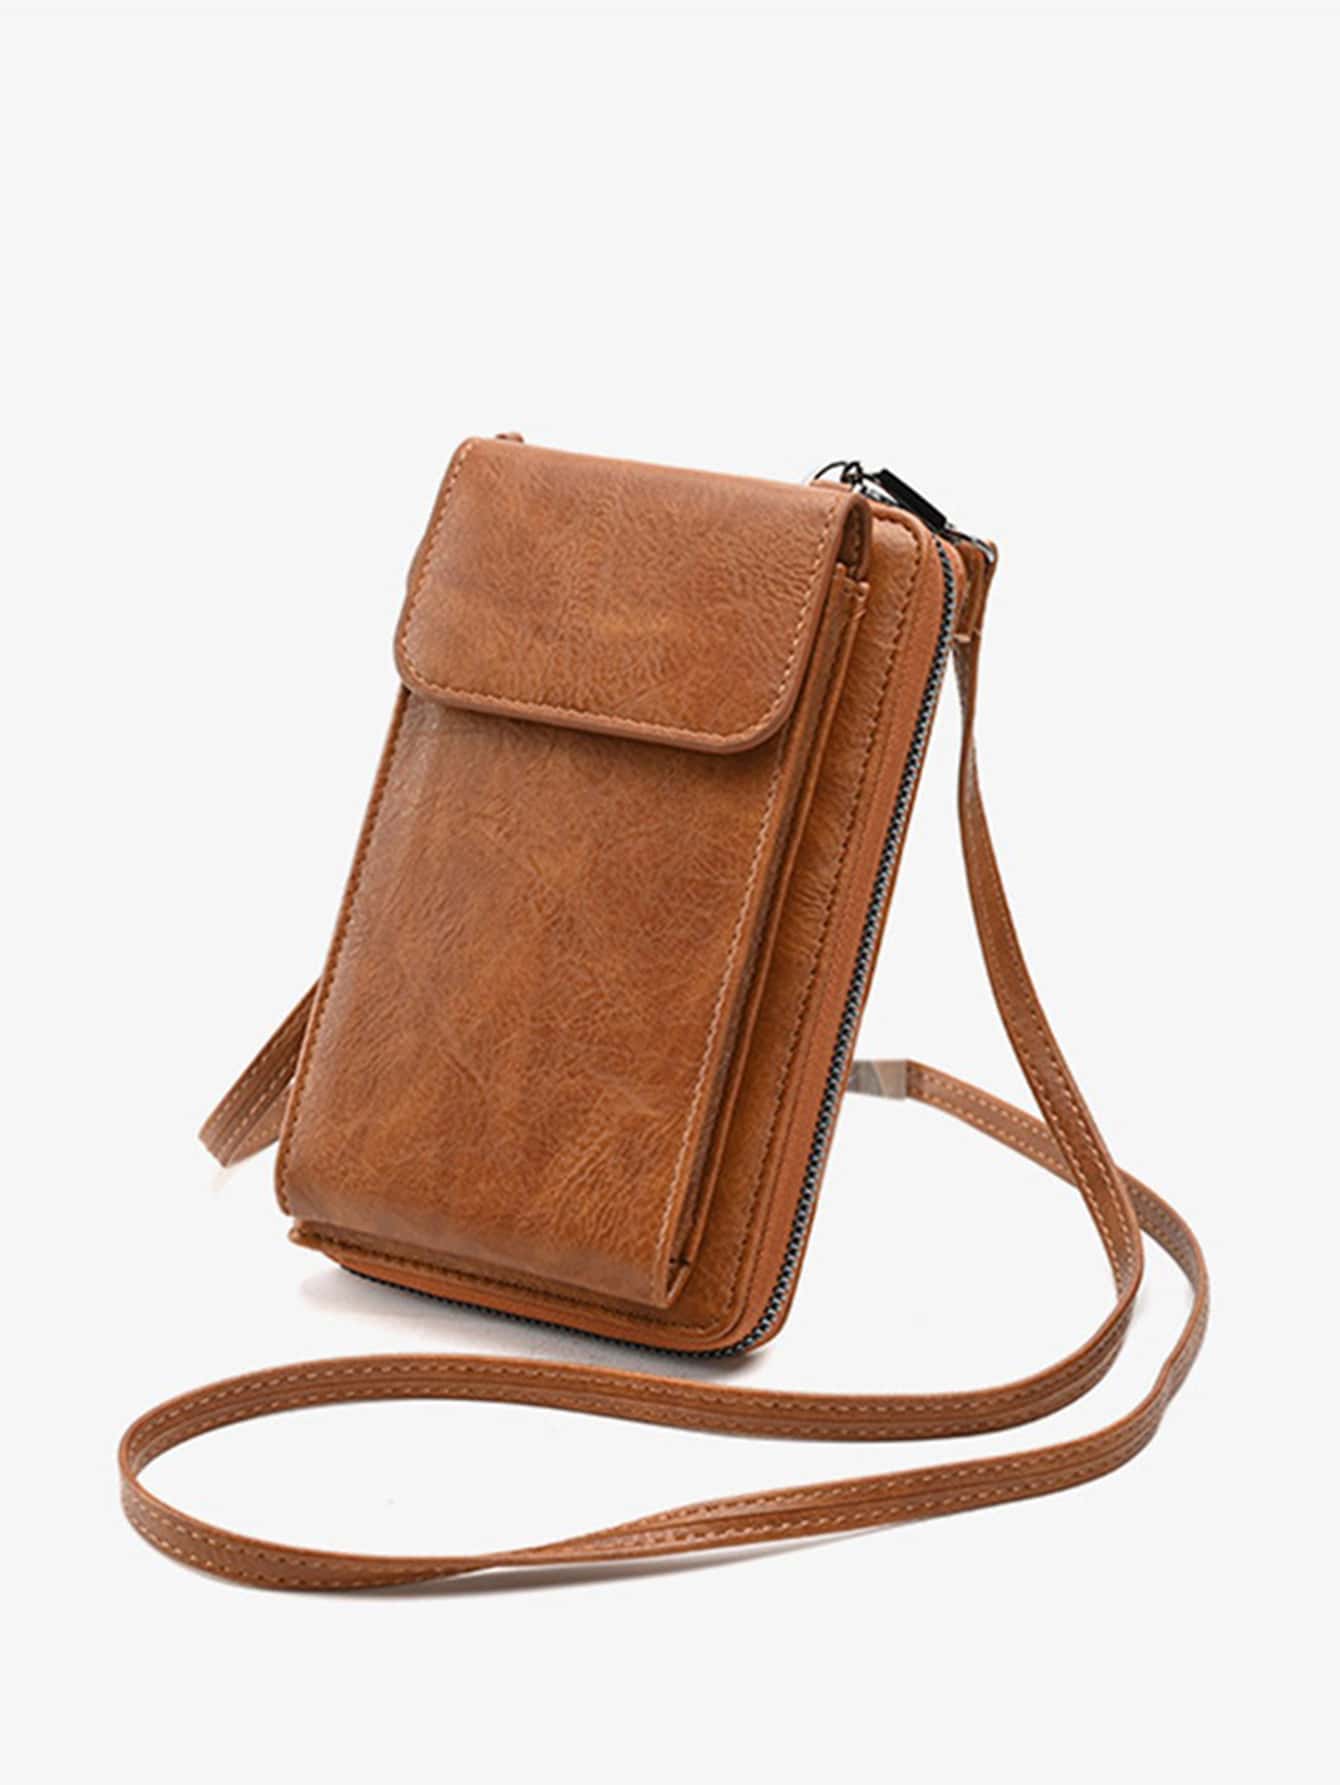 Новый женский кошелек, коричневый 1 шт новый спортивный кошелек телефон сумка рюкзак портмоне брелок длинный кошелек сумка через плечо сумка через плечо фиолетовый